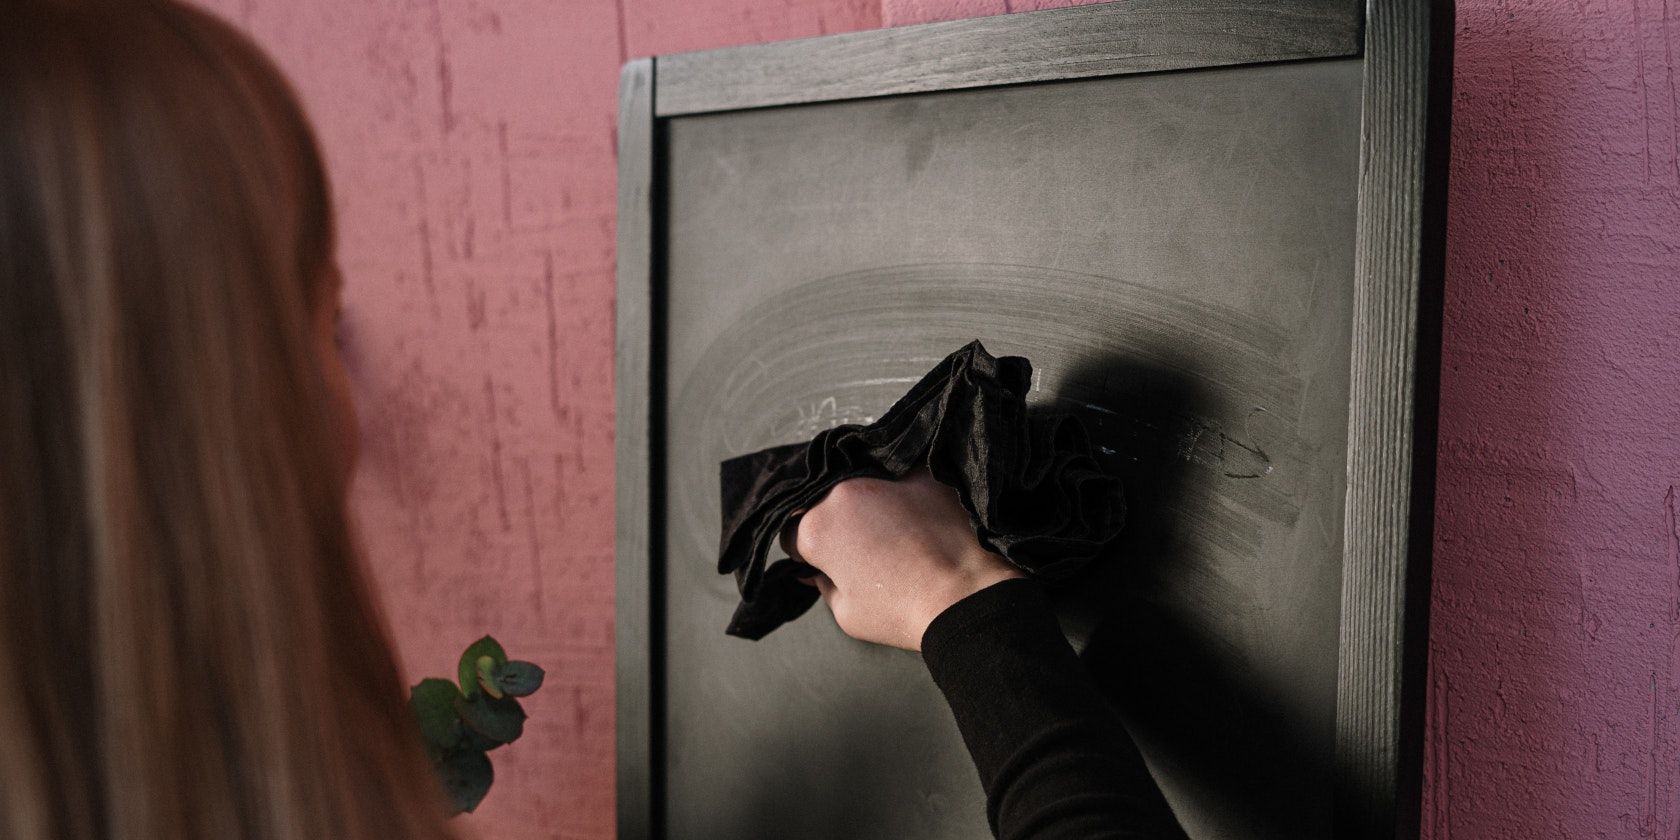 Woman erasing chalkboard using a cloth